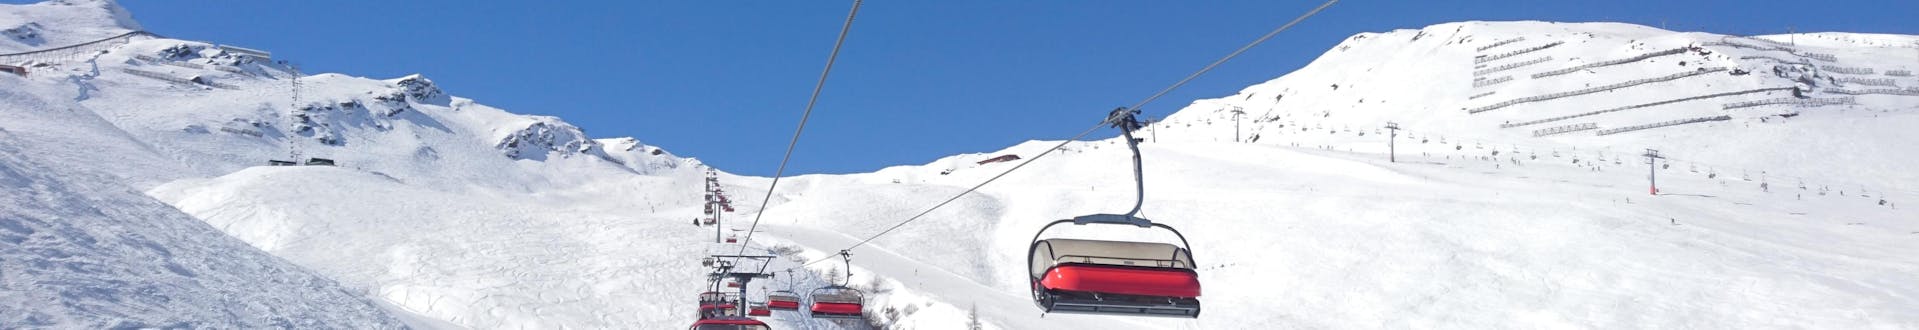 Skilift auf den Pisten von Götzens - Muttereralm, wo Sie Skikurse buchen können.